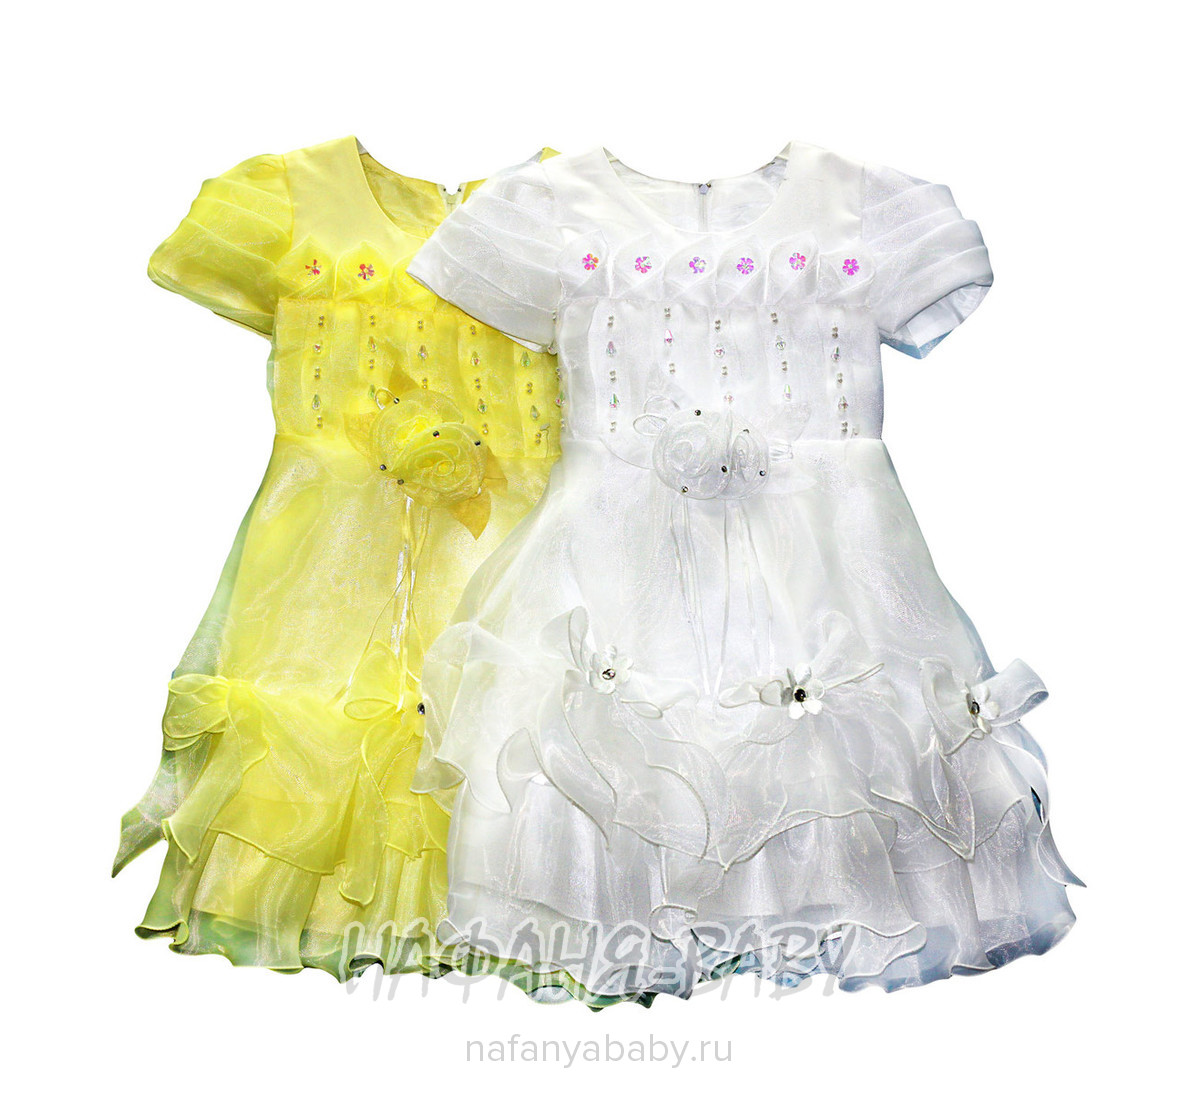 Детское нарядное платье, цвет белый, купить в интернет магазине Нафаня. арт: 5217.